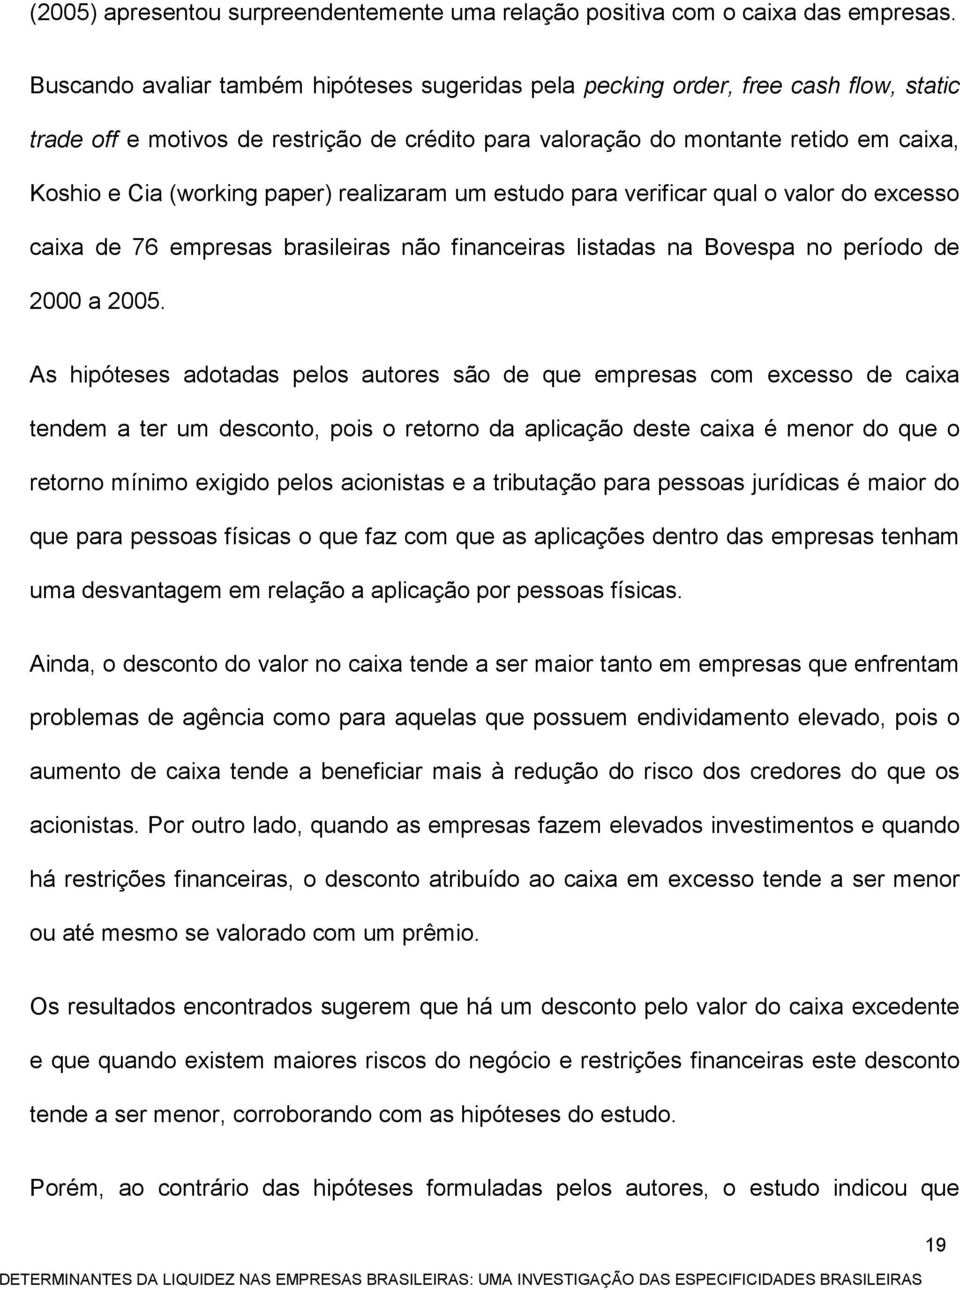 paper) realizaram um estudo para verificar qual o valor do excesso caixa de 76 empresas brasileiras não financeiras listadas na Bovespa no período de 2000 a 2005.